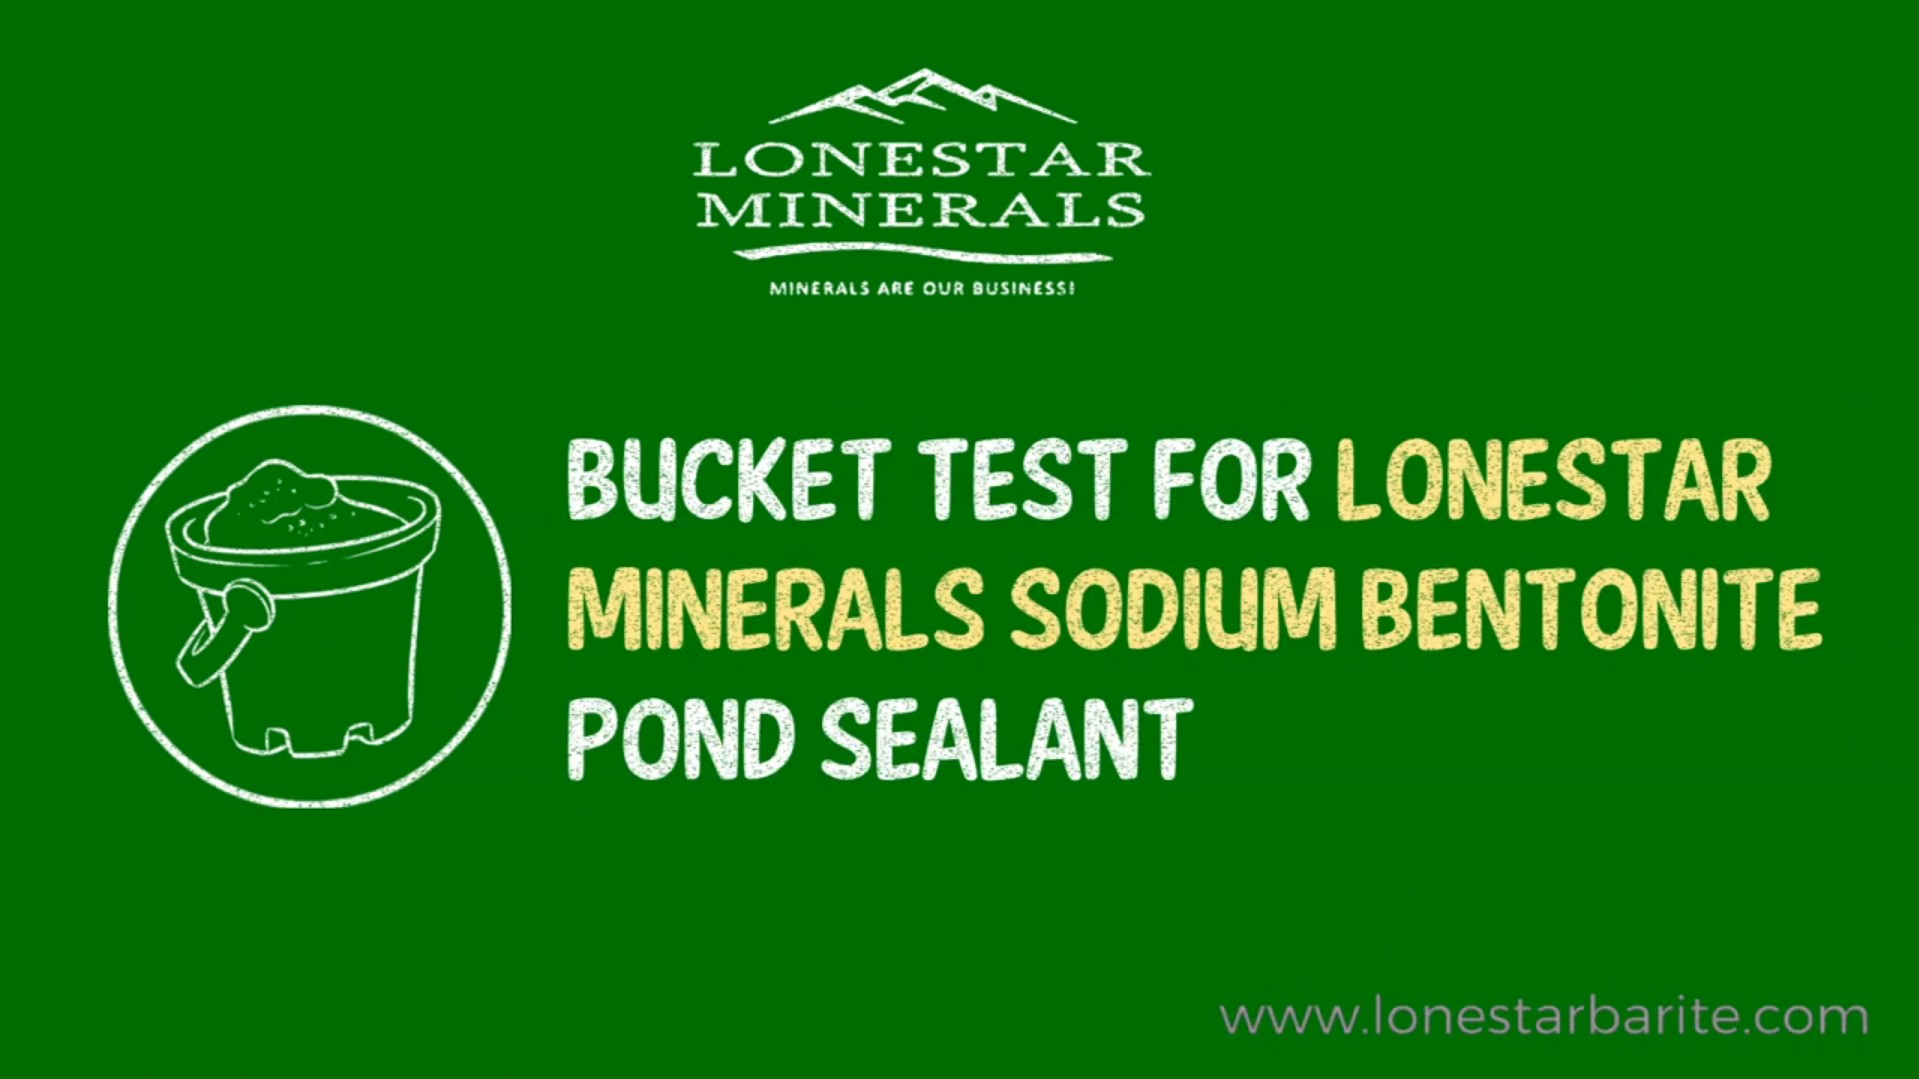 Lonestar Bucket Test